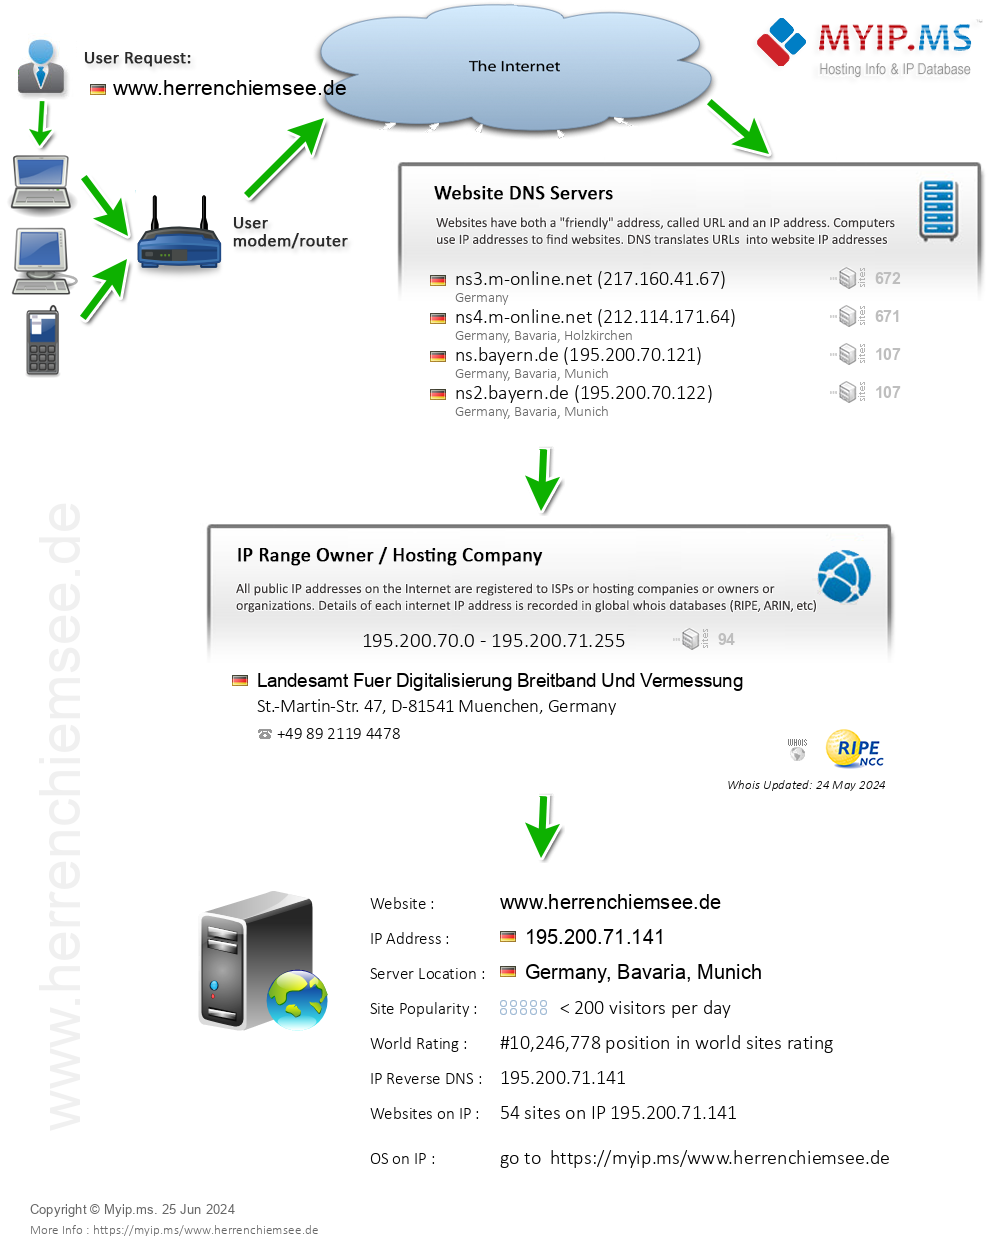 Herrenchiemsee.de - Website Hosting Visual IP Diagram